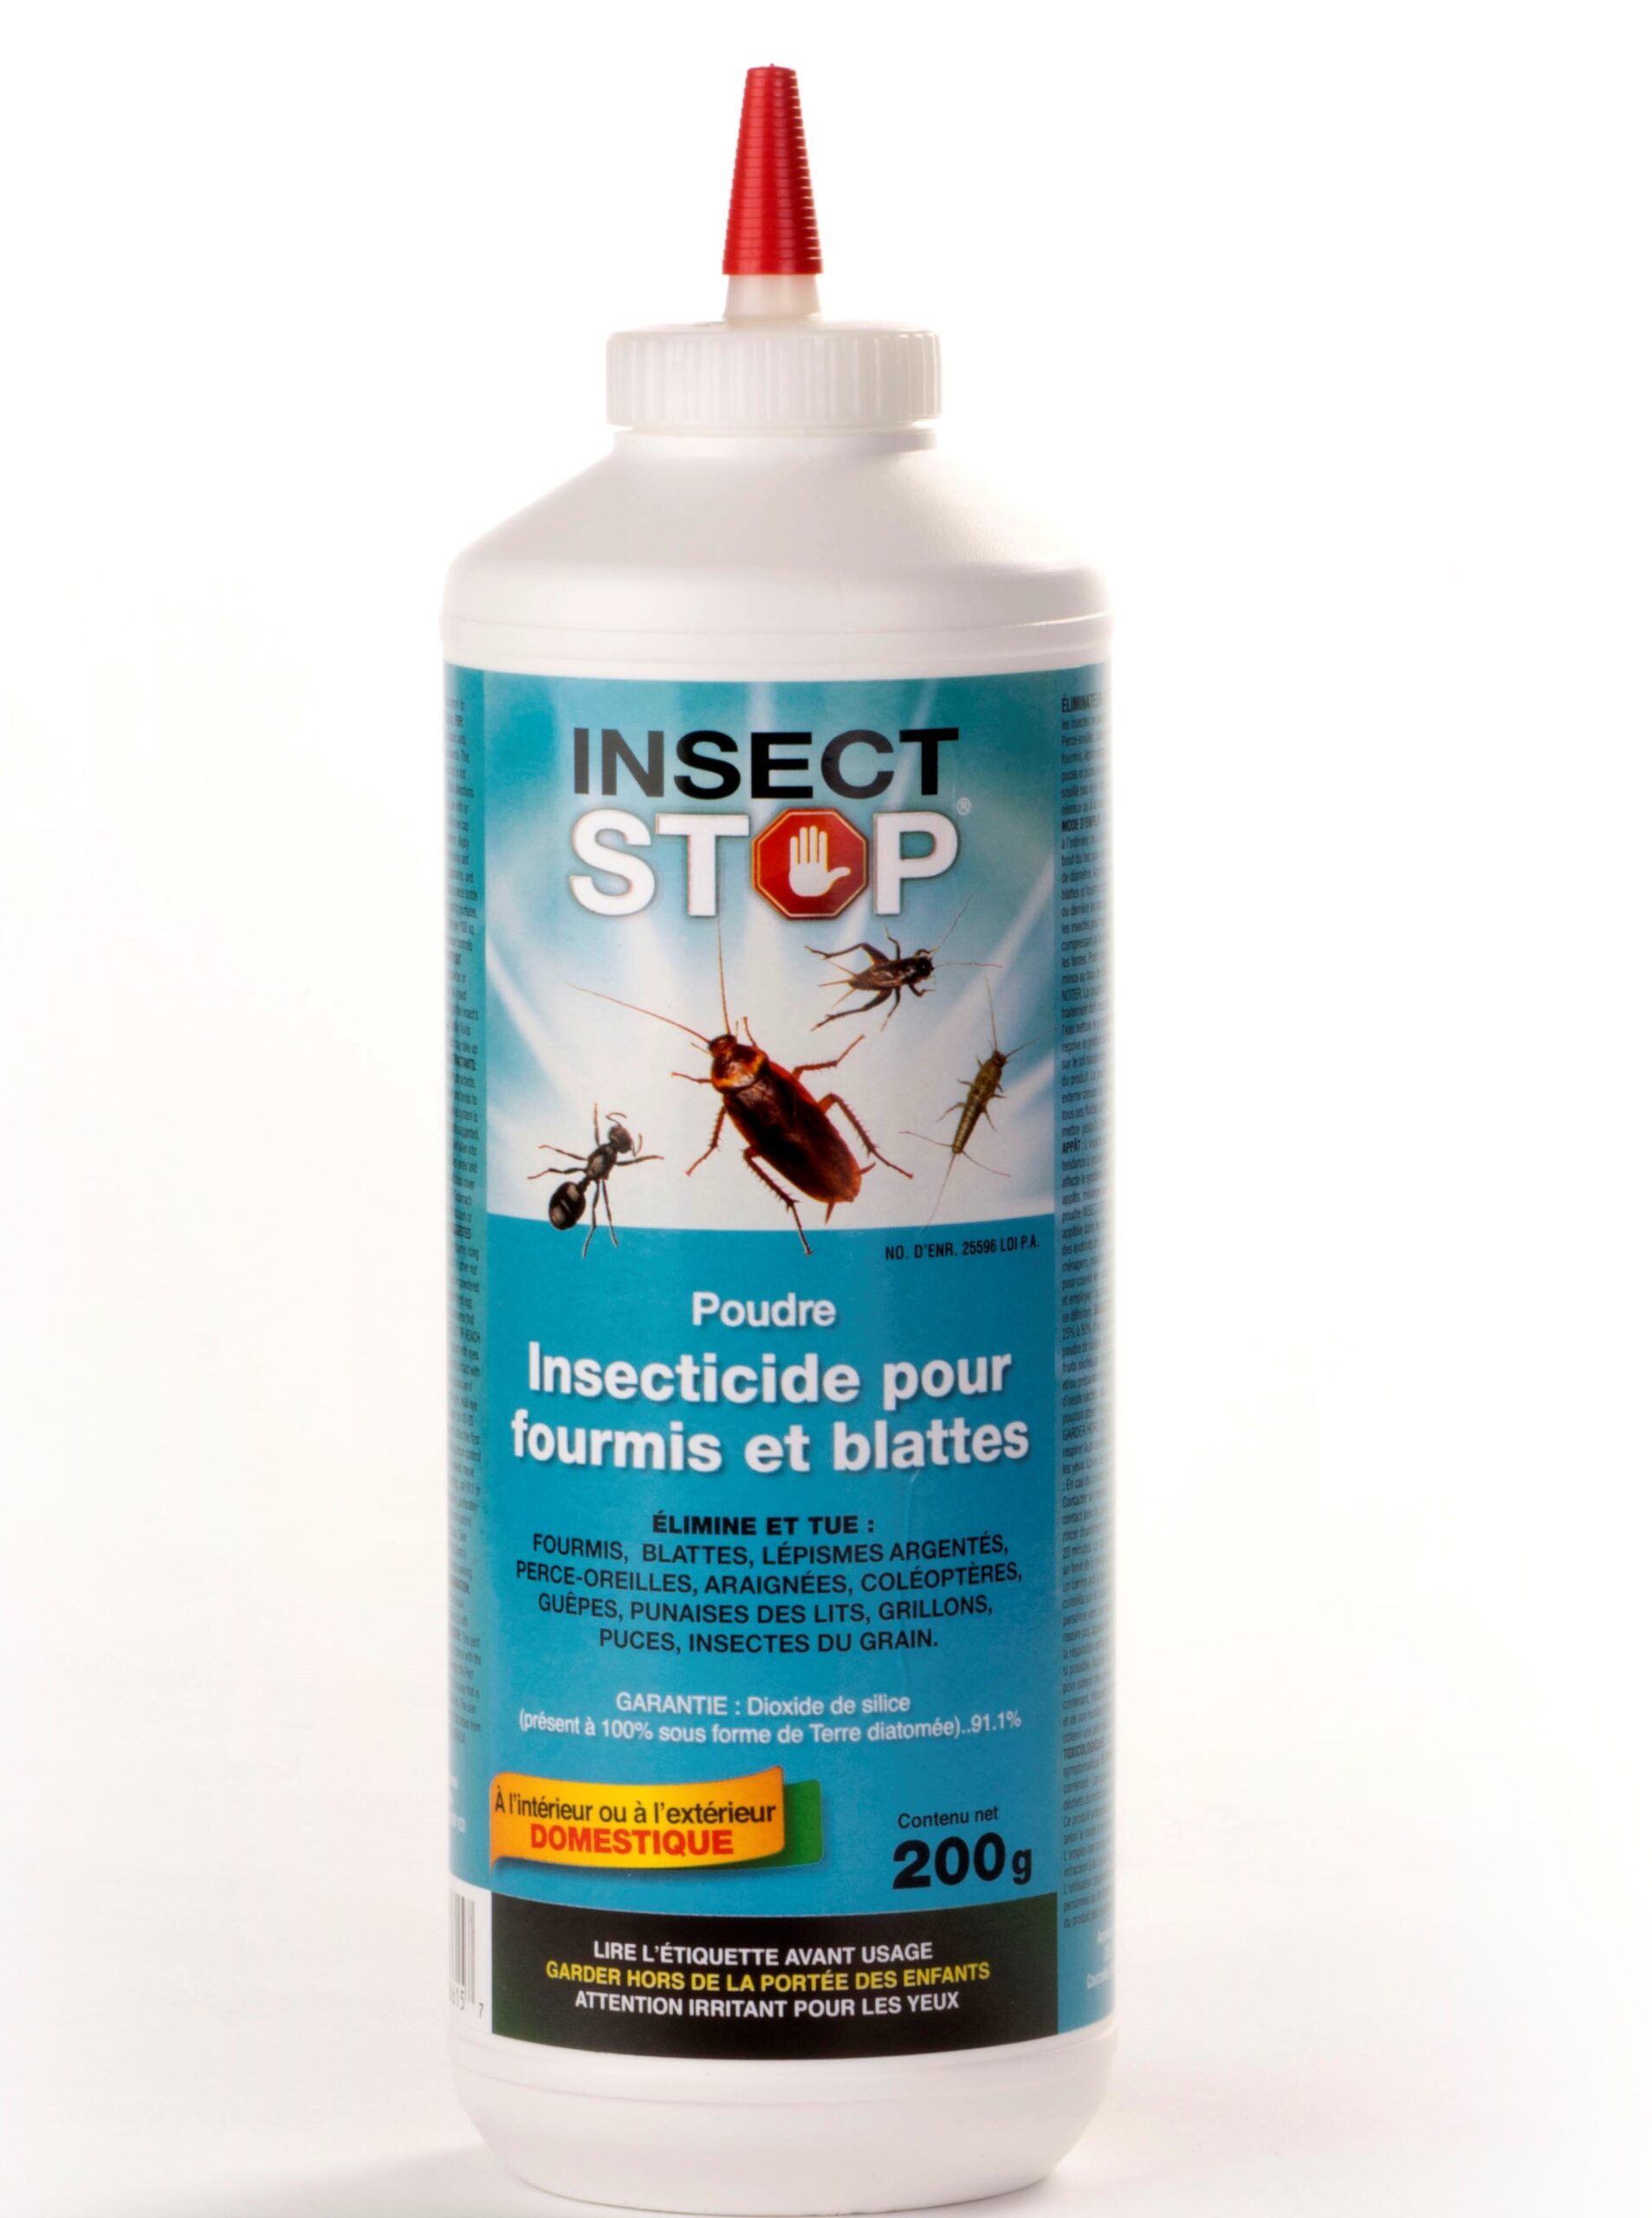 Insecticide 4J dilué 5% - Tous insectes - Prêt à l'emploi à 8,90